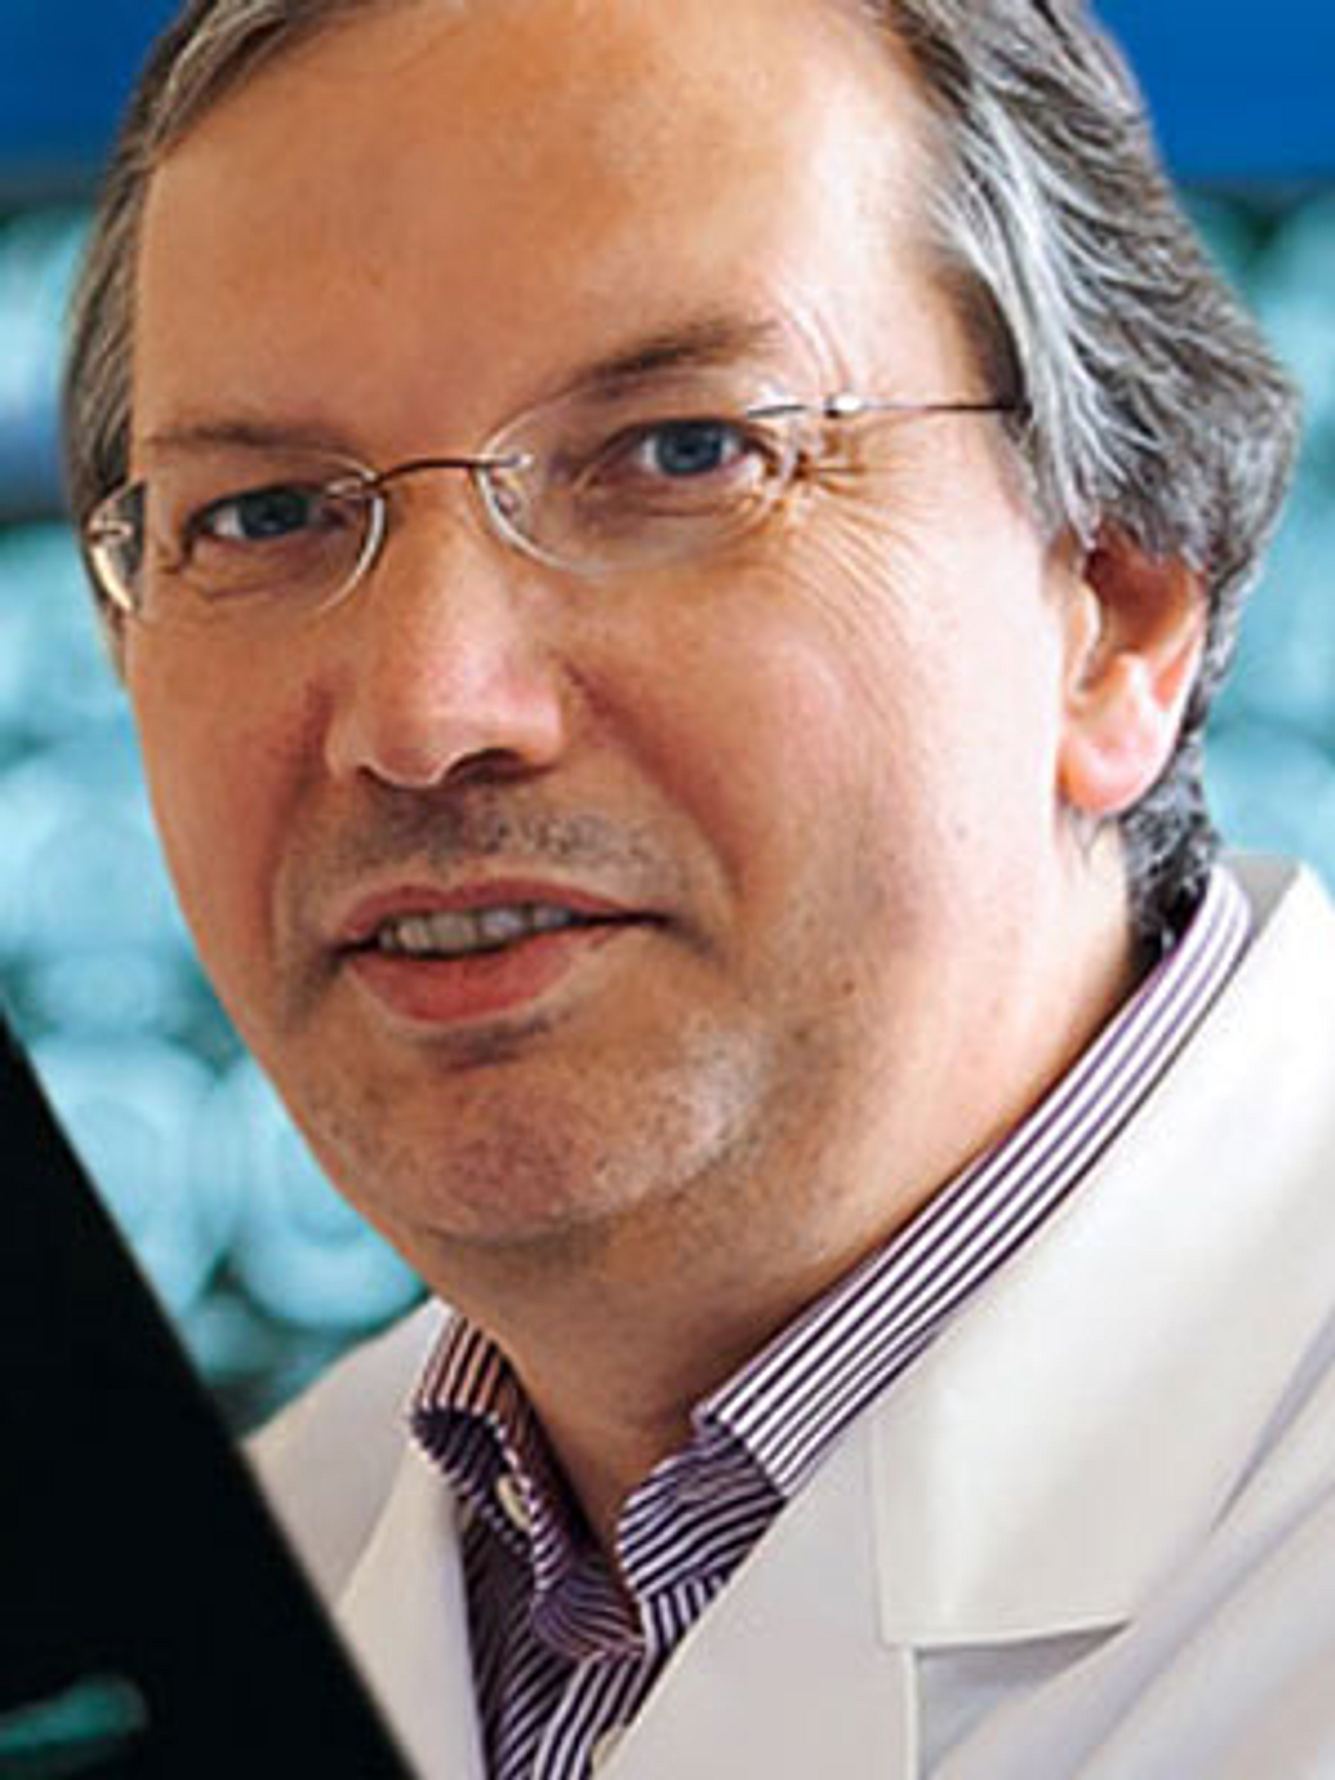 Schmerz-Experte Prof. Hartmut Göbel von der Schmerzklink Kiel im Interview chronische Schmerzen